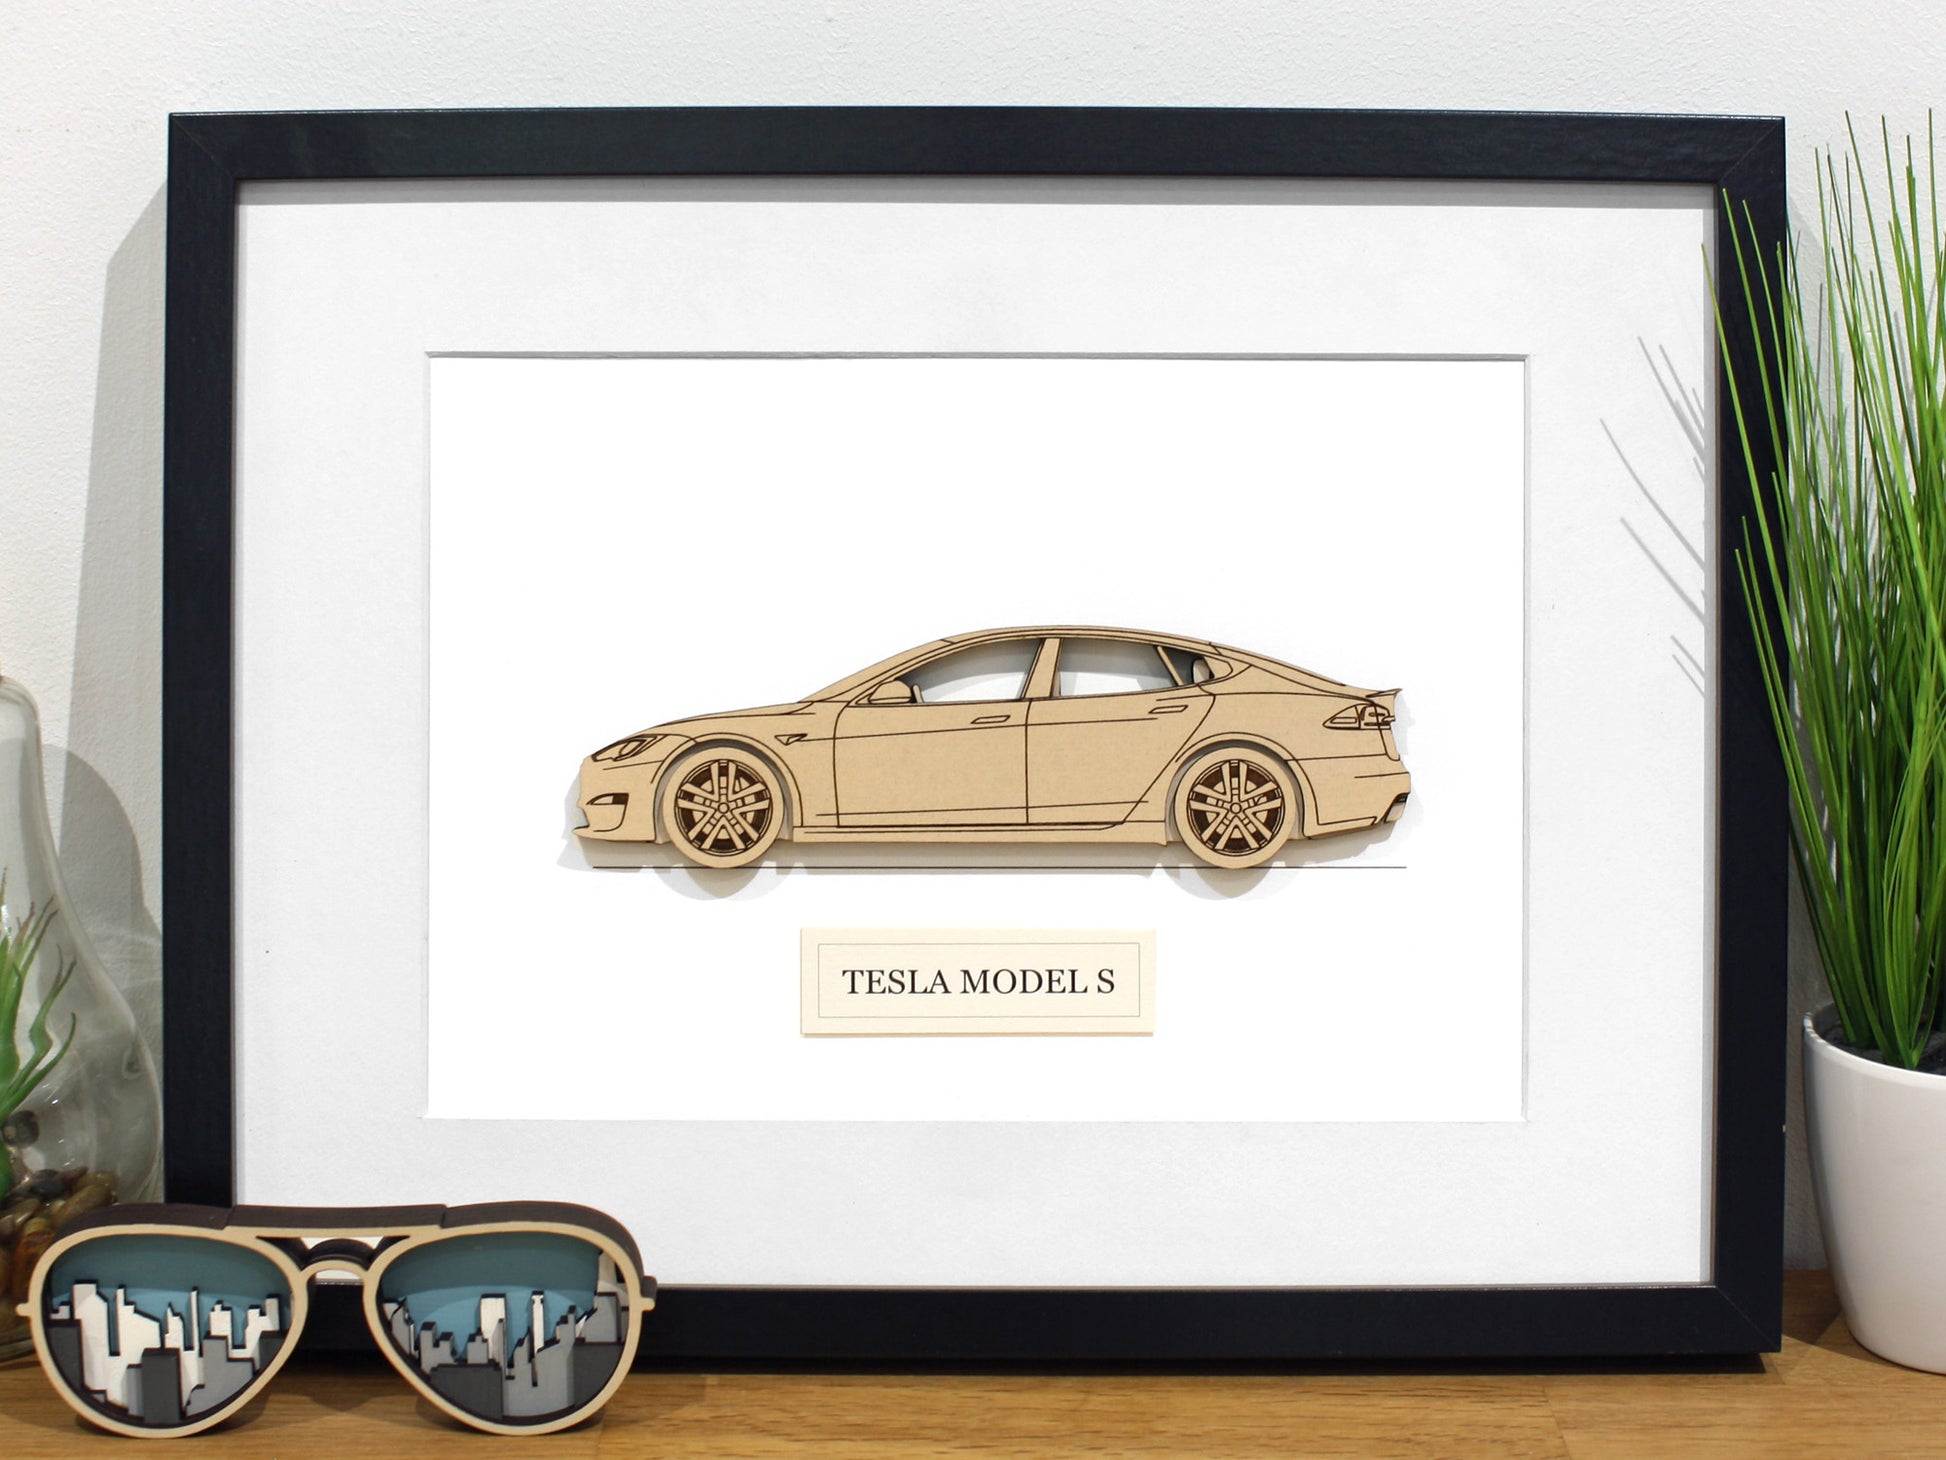 Tesla Model S gifts